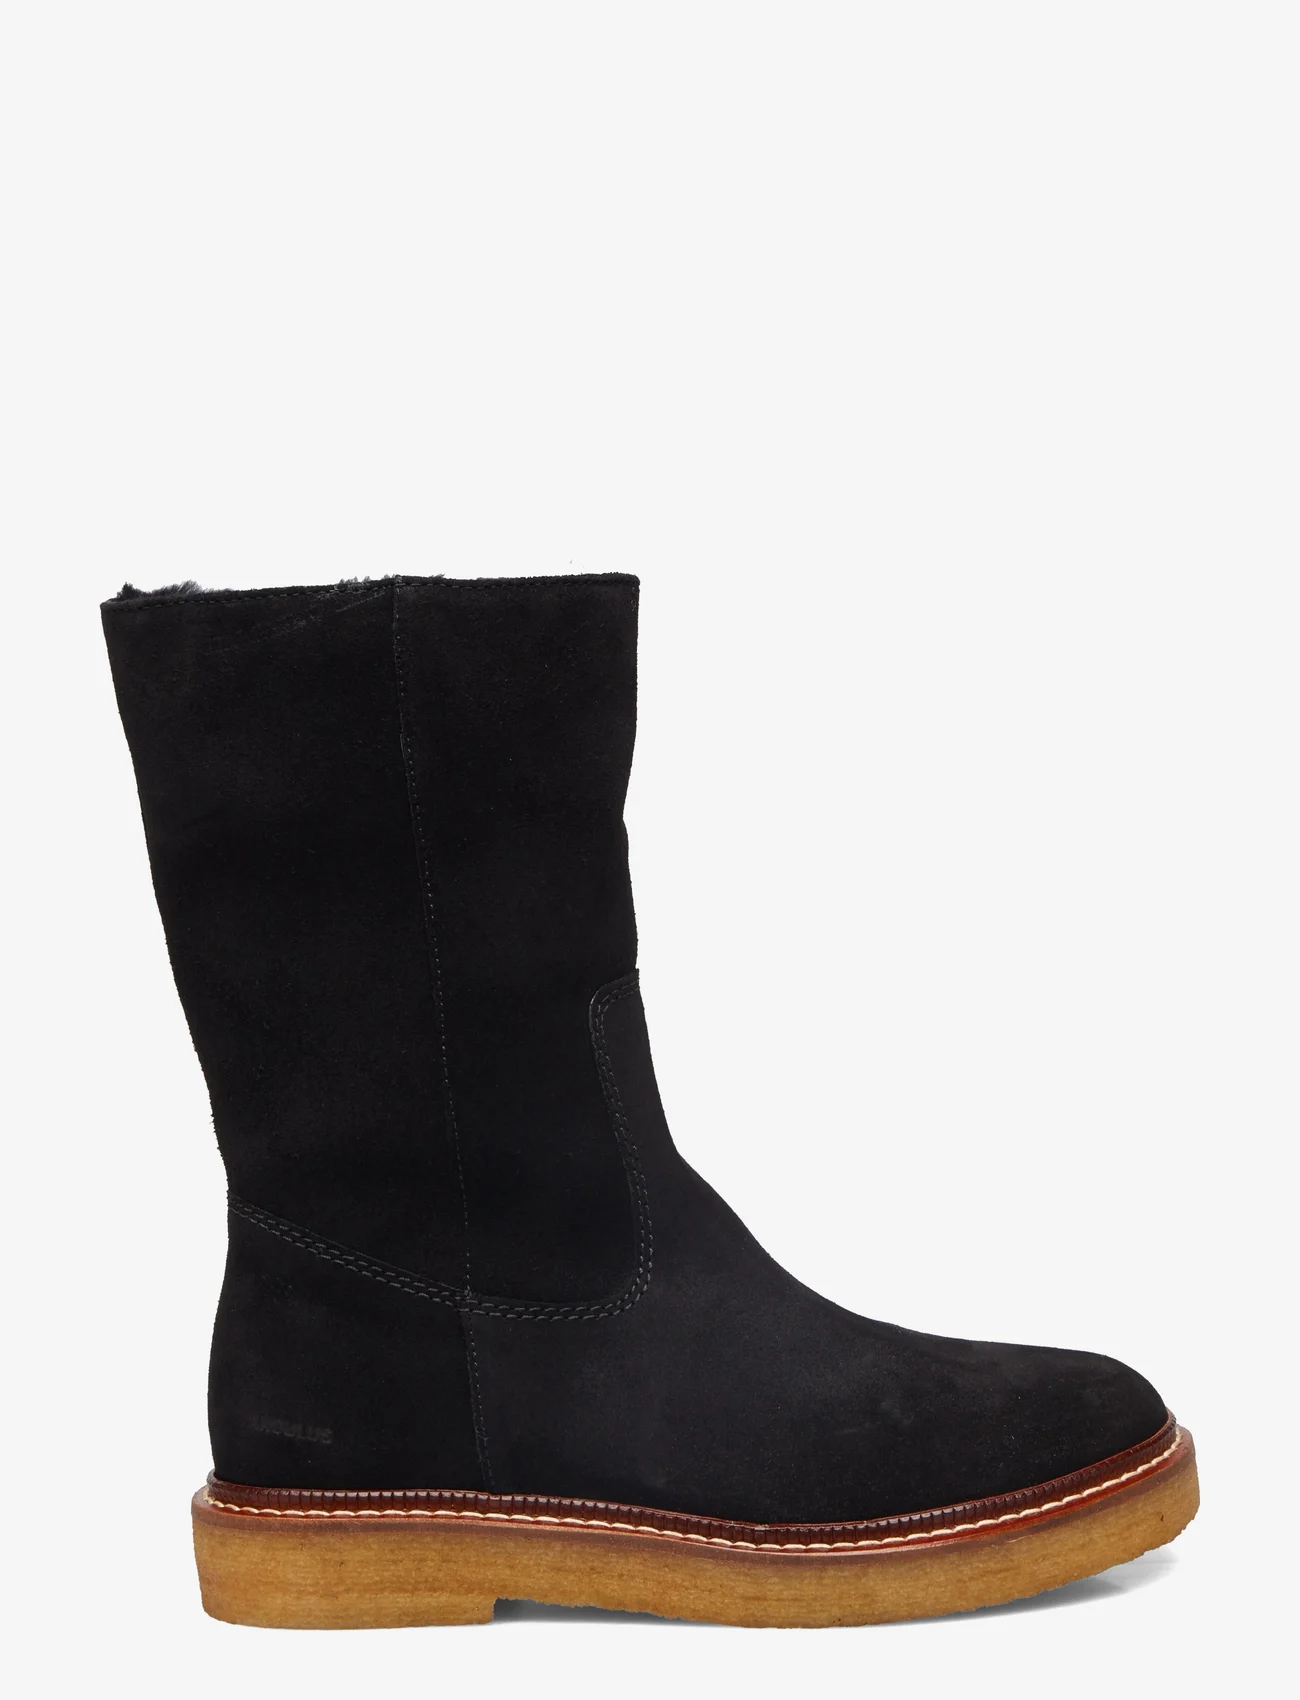 ANGULUS - Boots - flat - flache stiefeletten - 1163/2014 black/black lamb woo - 1